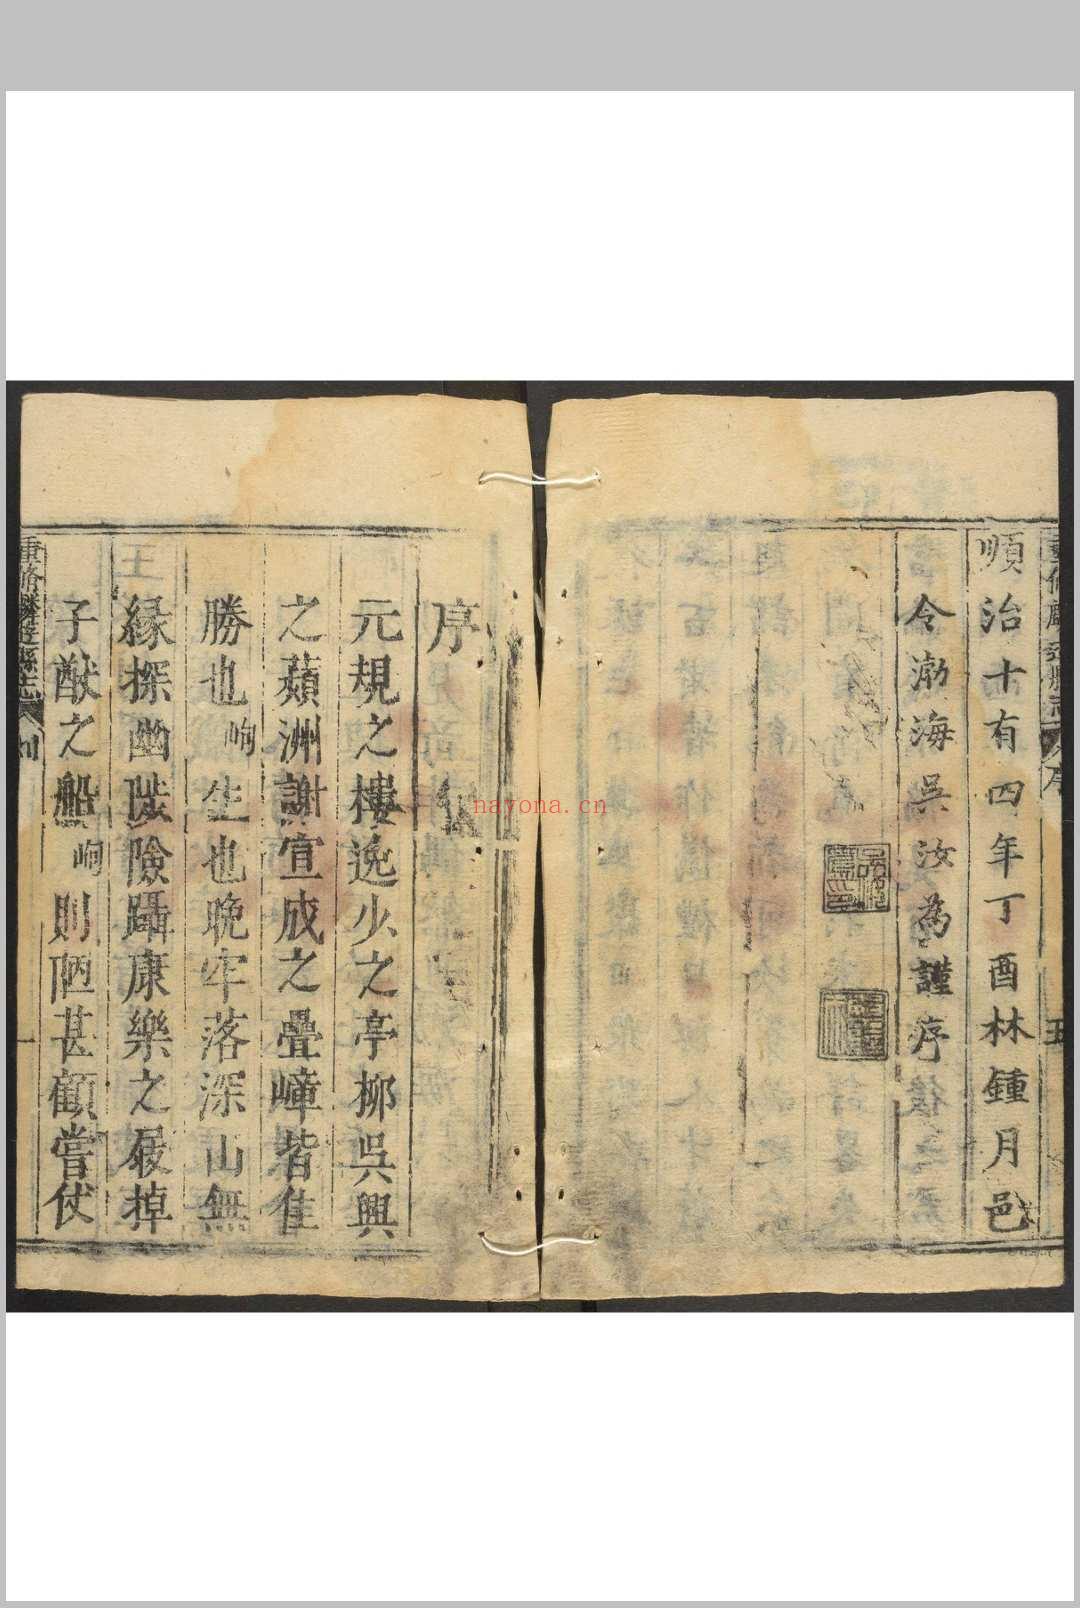 麟游县志  5卷 吴汝为, 刘元泰修.康熙间 [between 1662 and 1722]